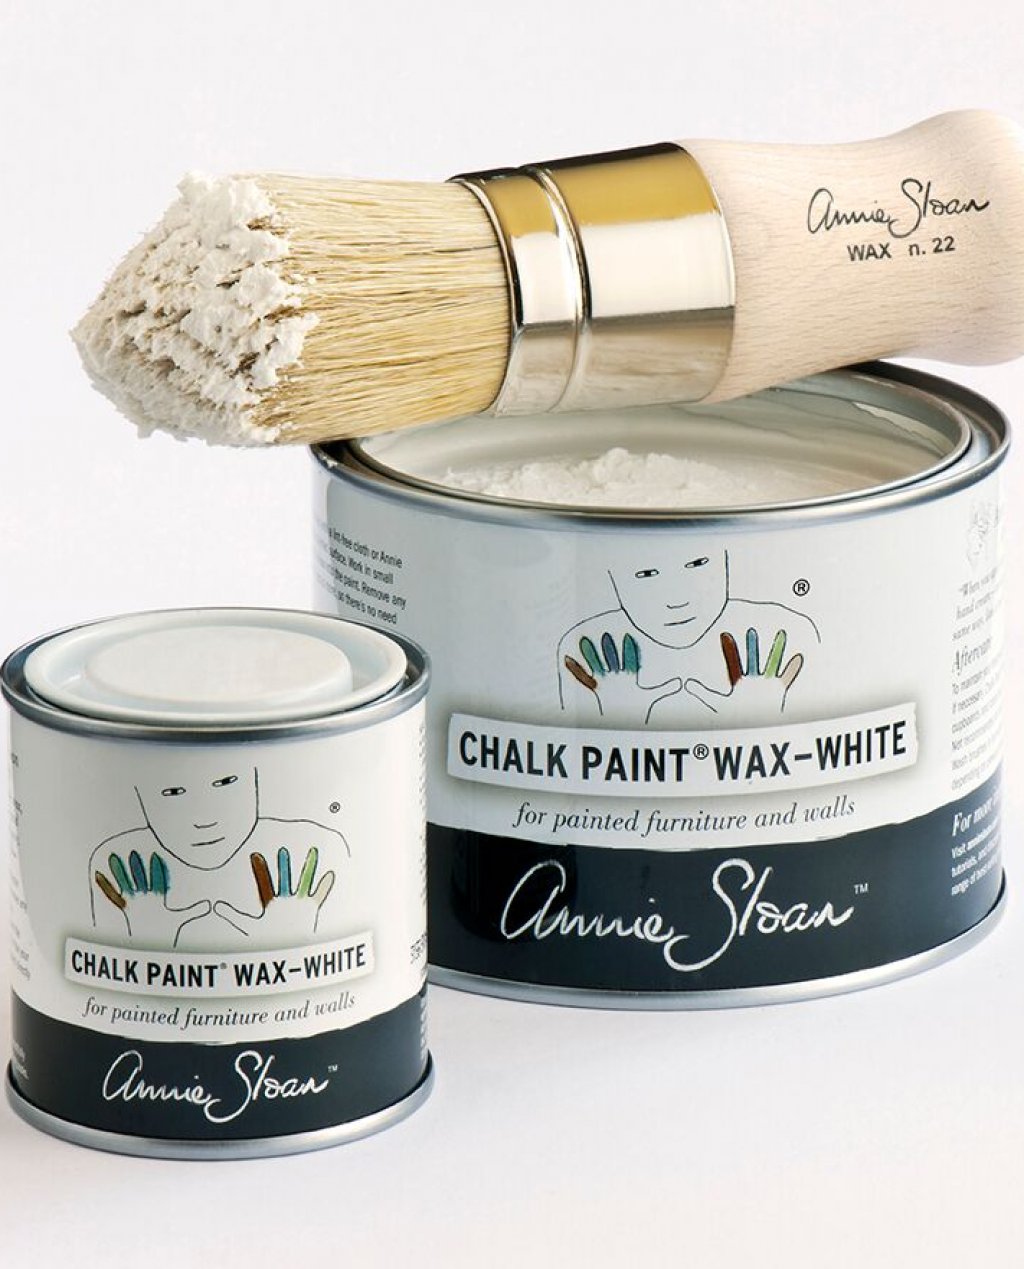 Annie Sloan Soft Wax - White